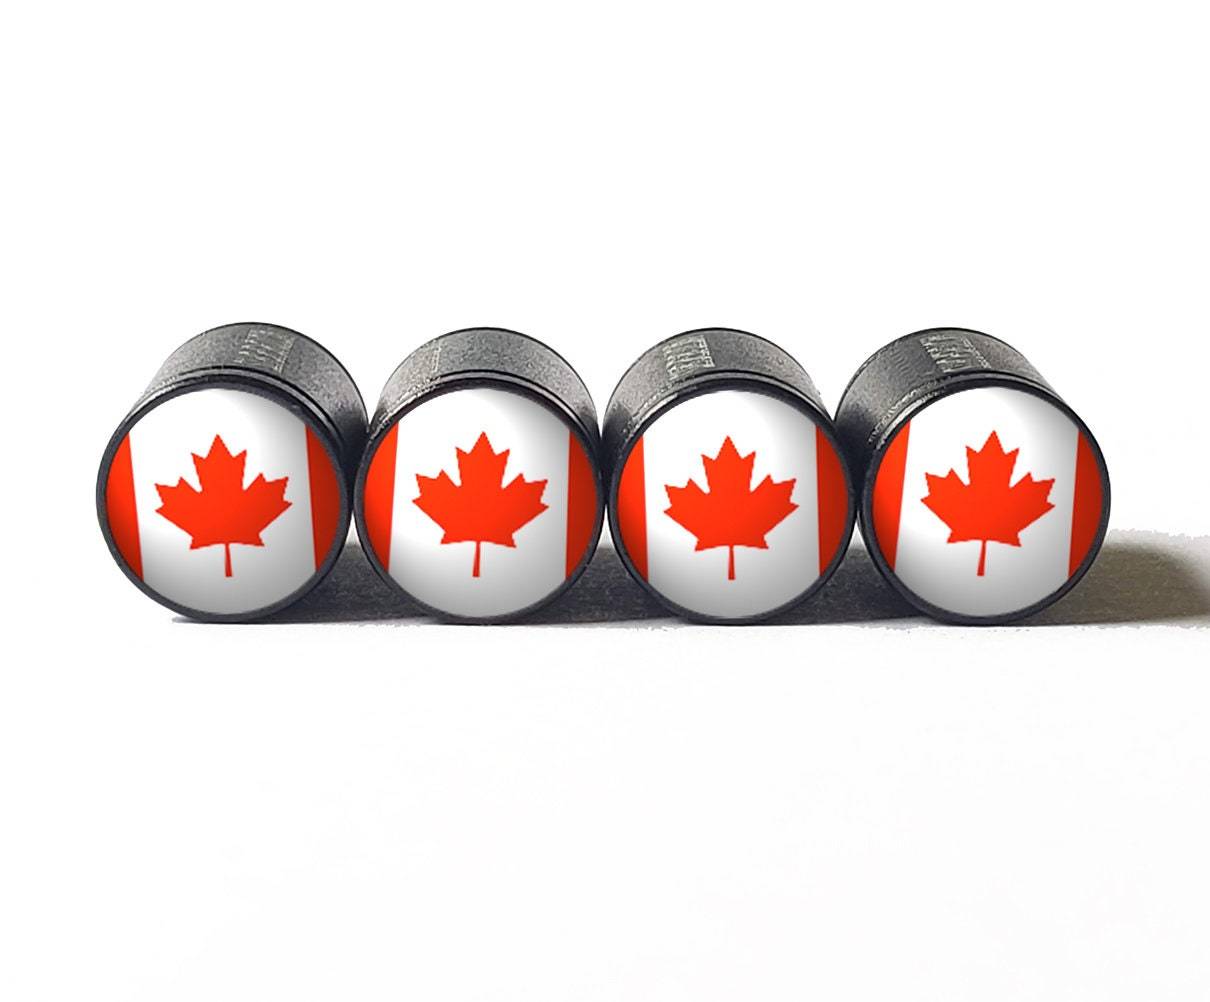 Primary image for Canada Flag Tire Valve Stem Caps - Black, Aluminum - Set of Four